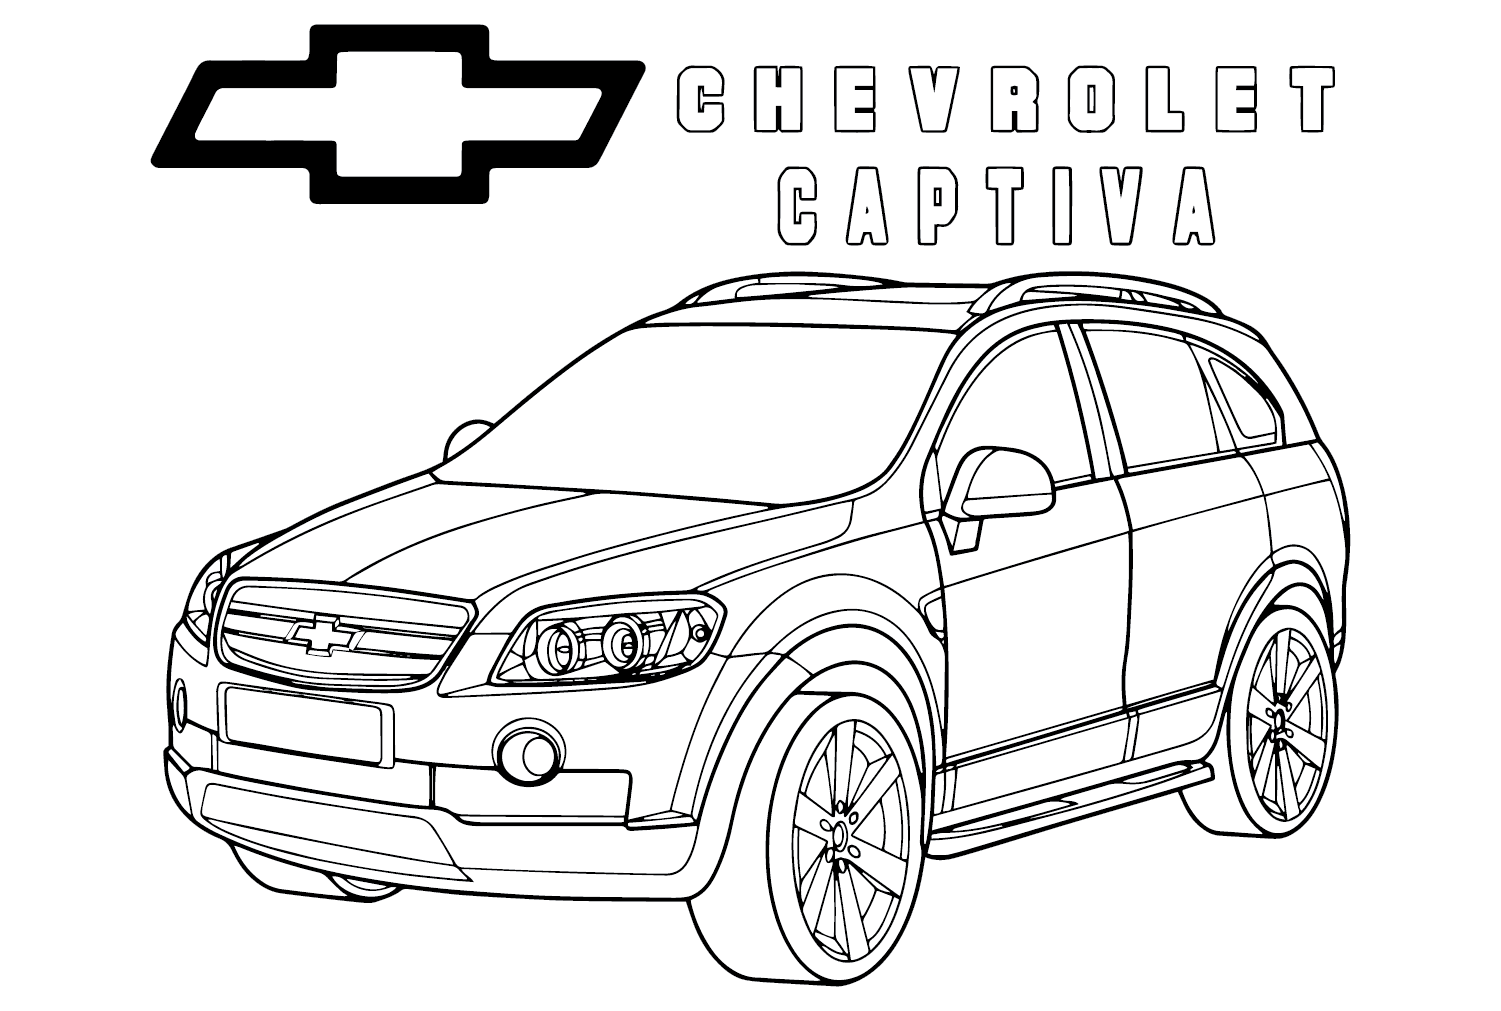 Página para colorir do Chevrolet Captiva da Chevrolet